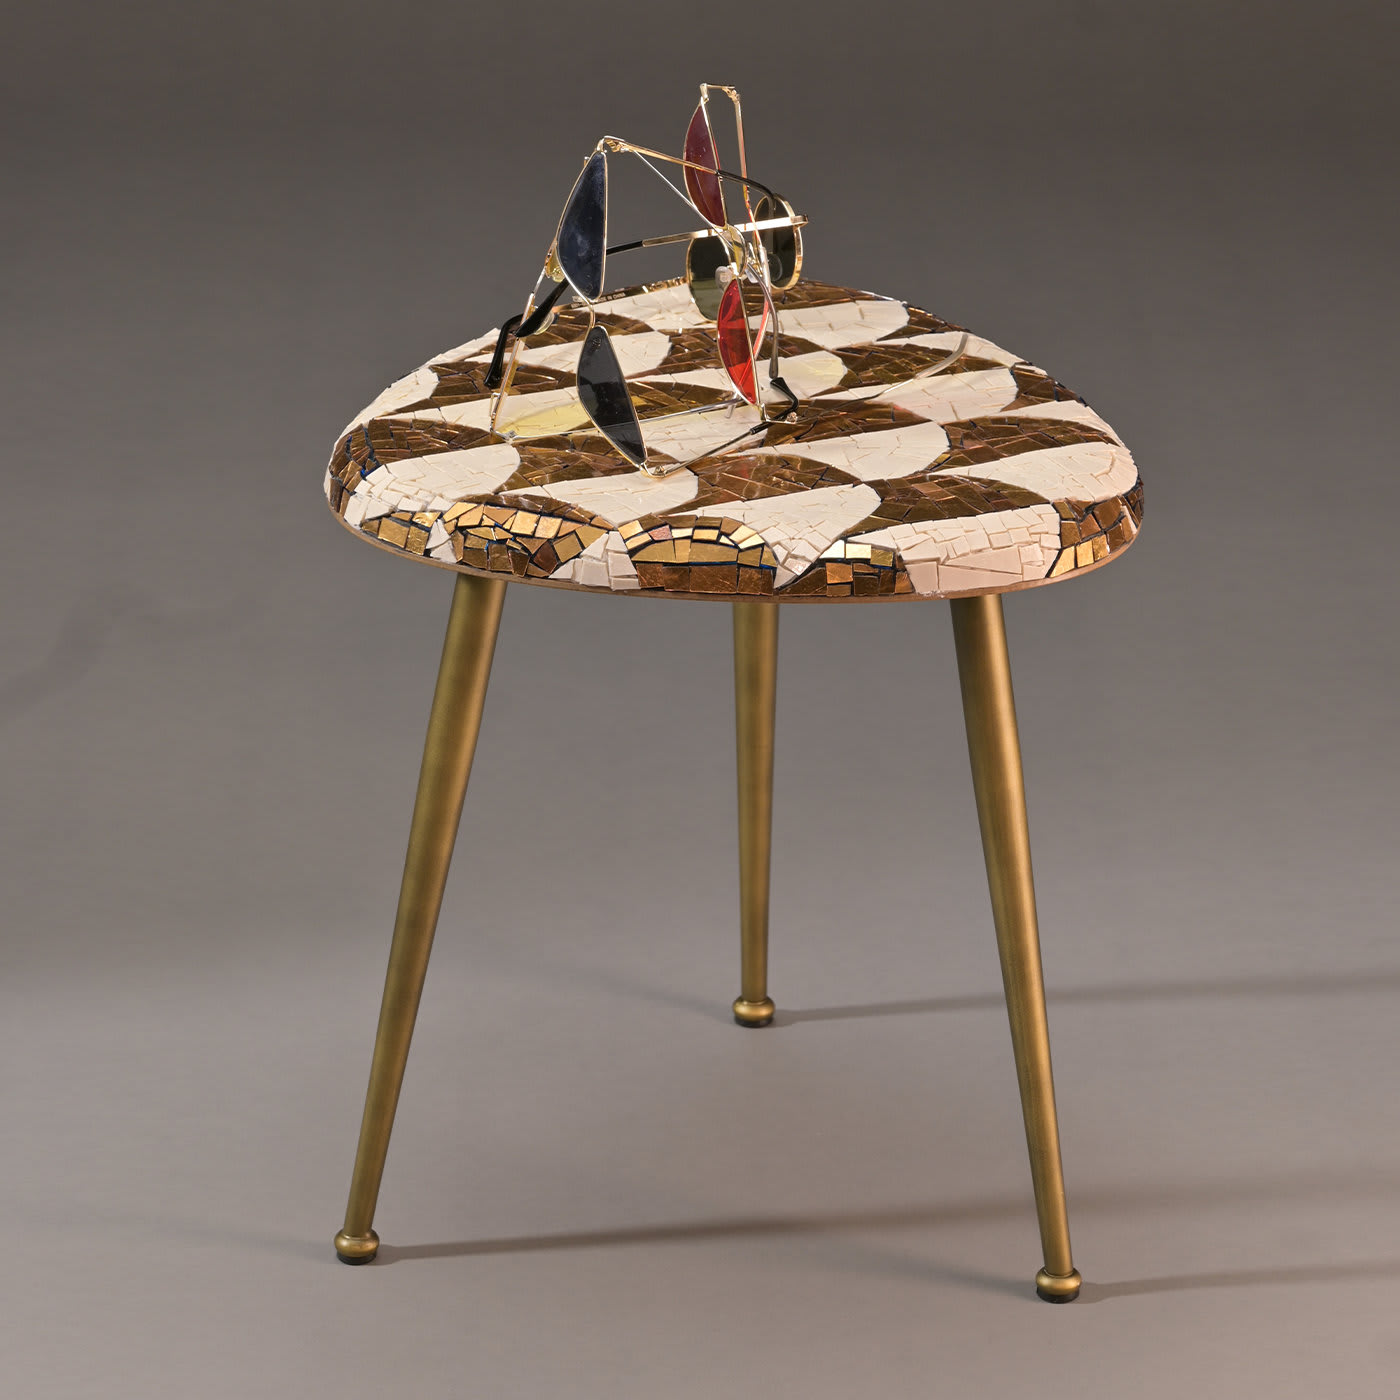 Casarialto Atelier Palmira coffee table by Michela Nardin - Casarialto